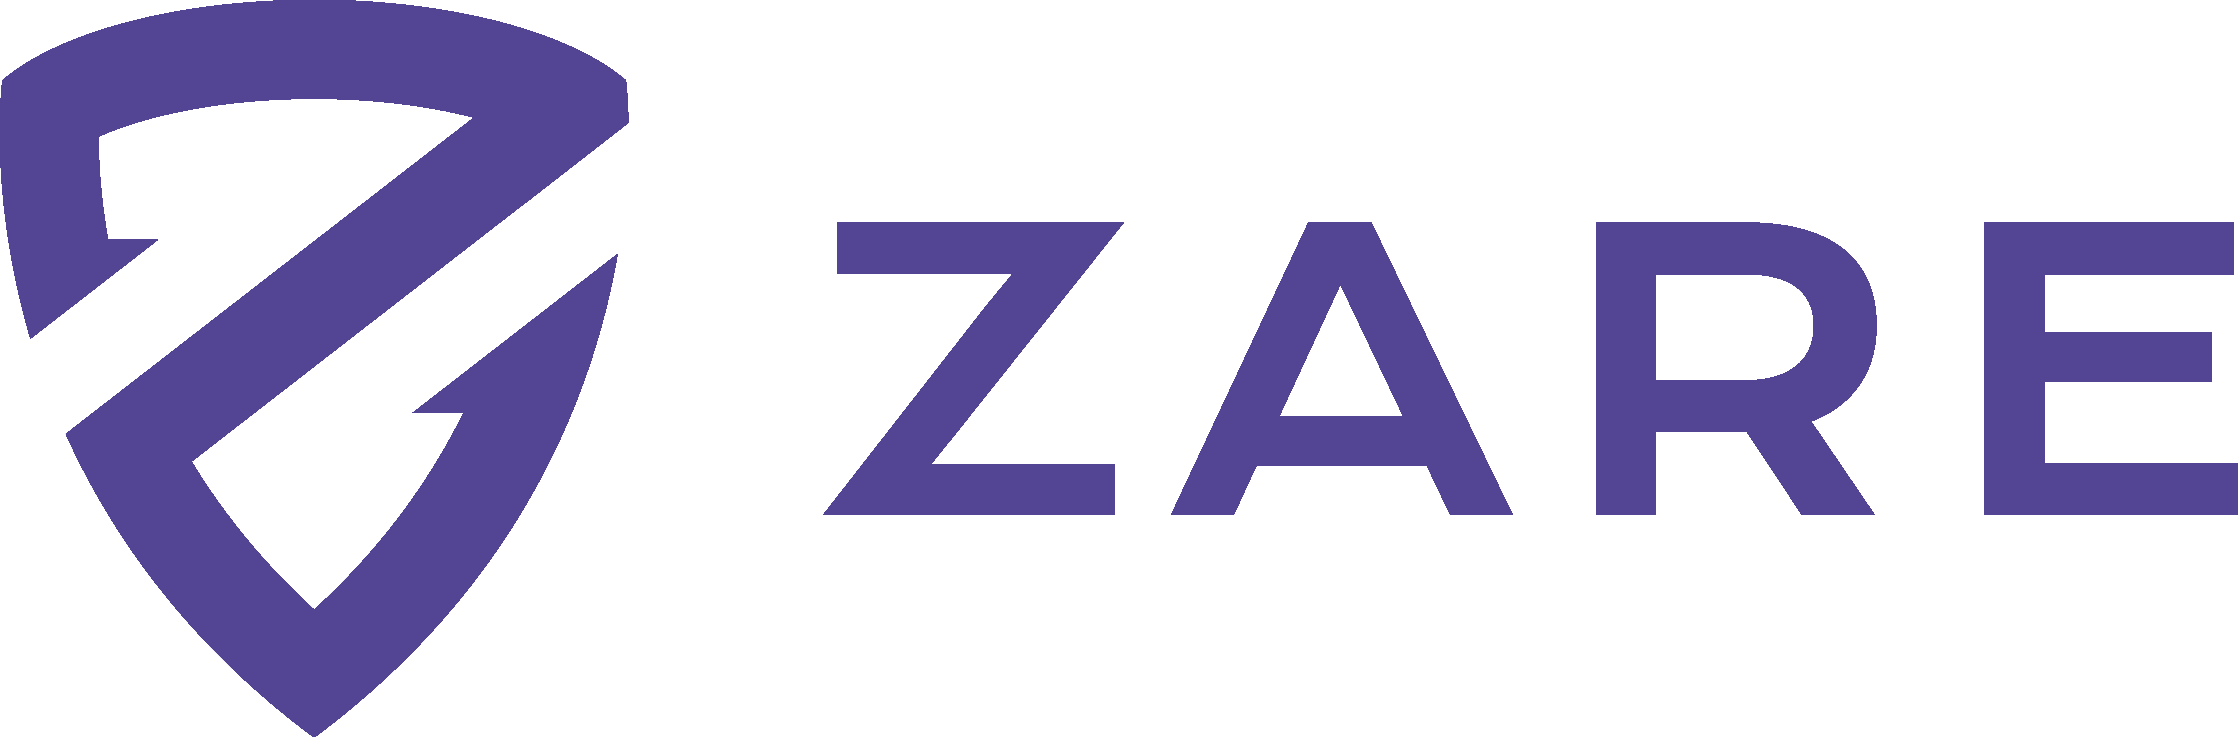 Zare - Hydra Communications